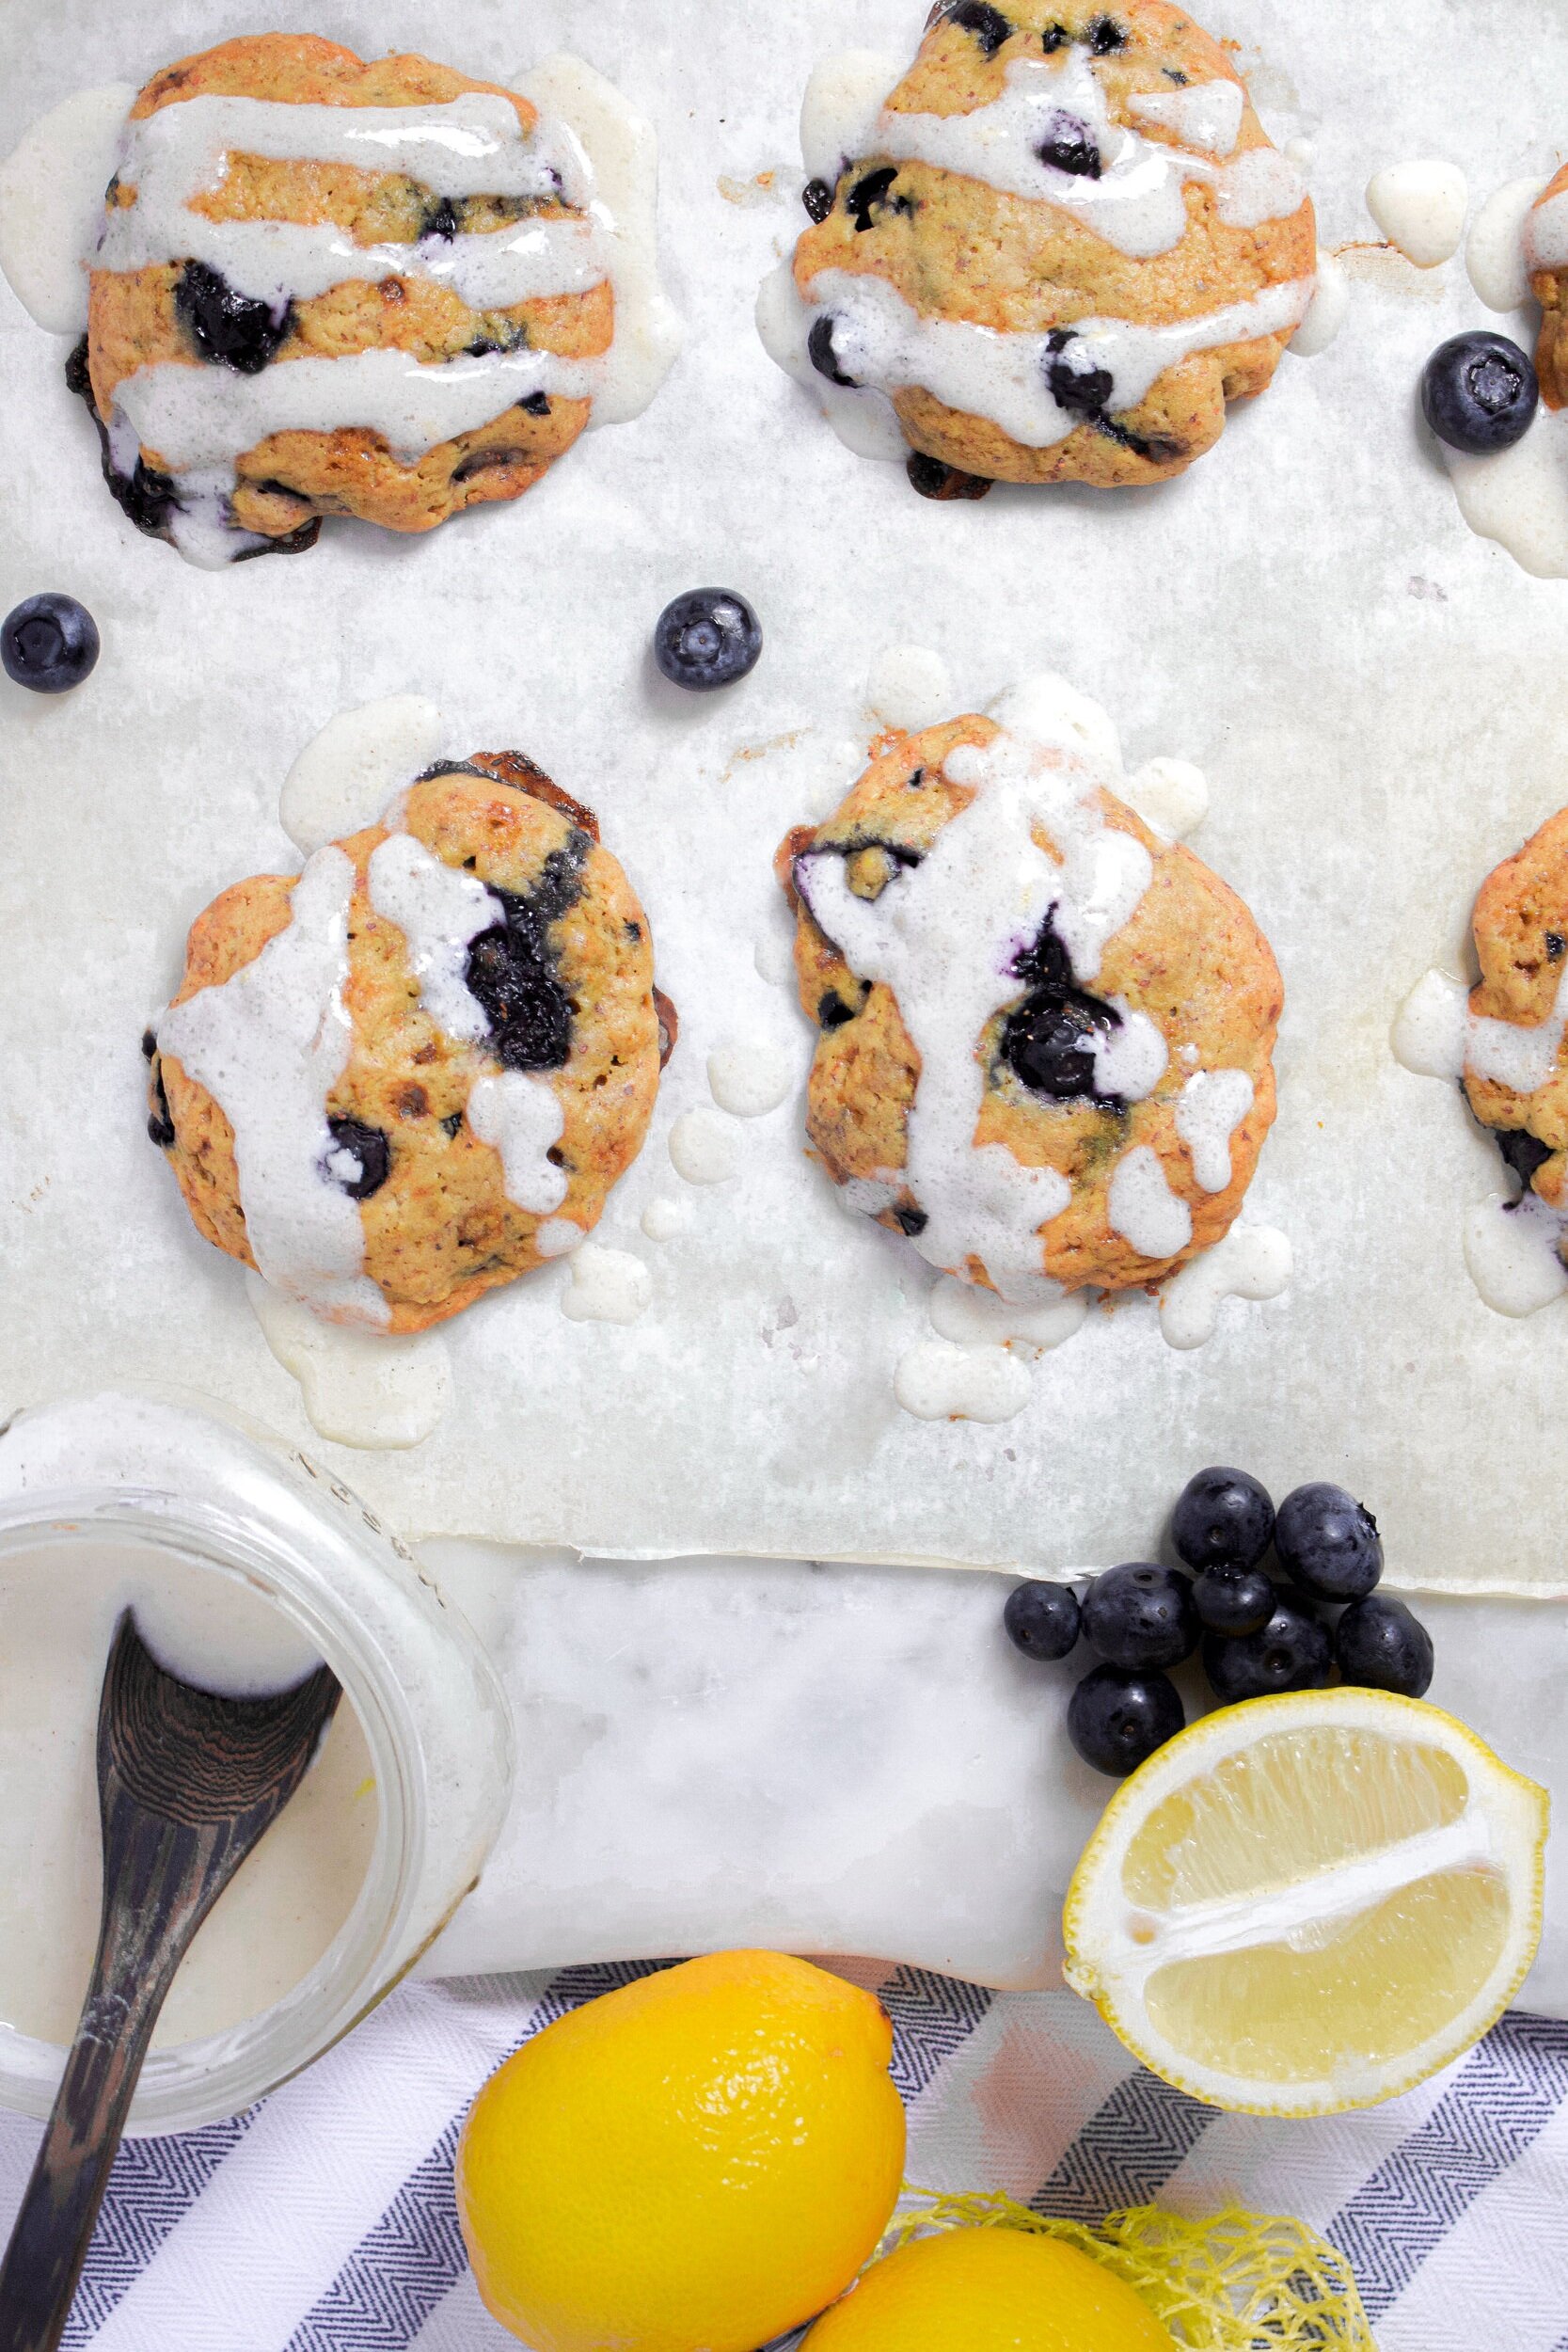 Blueberry Lemon Muffin Tops